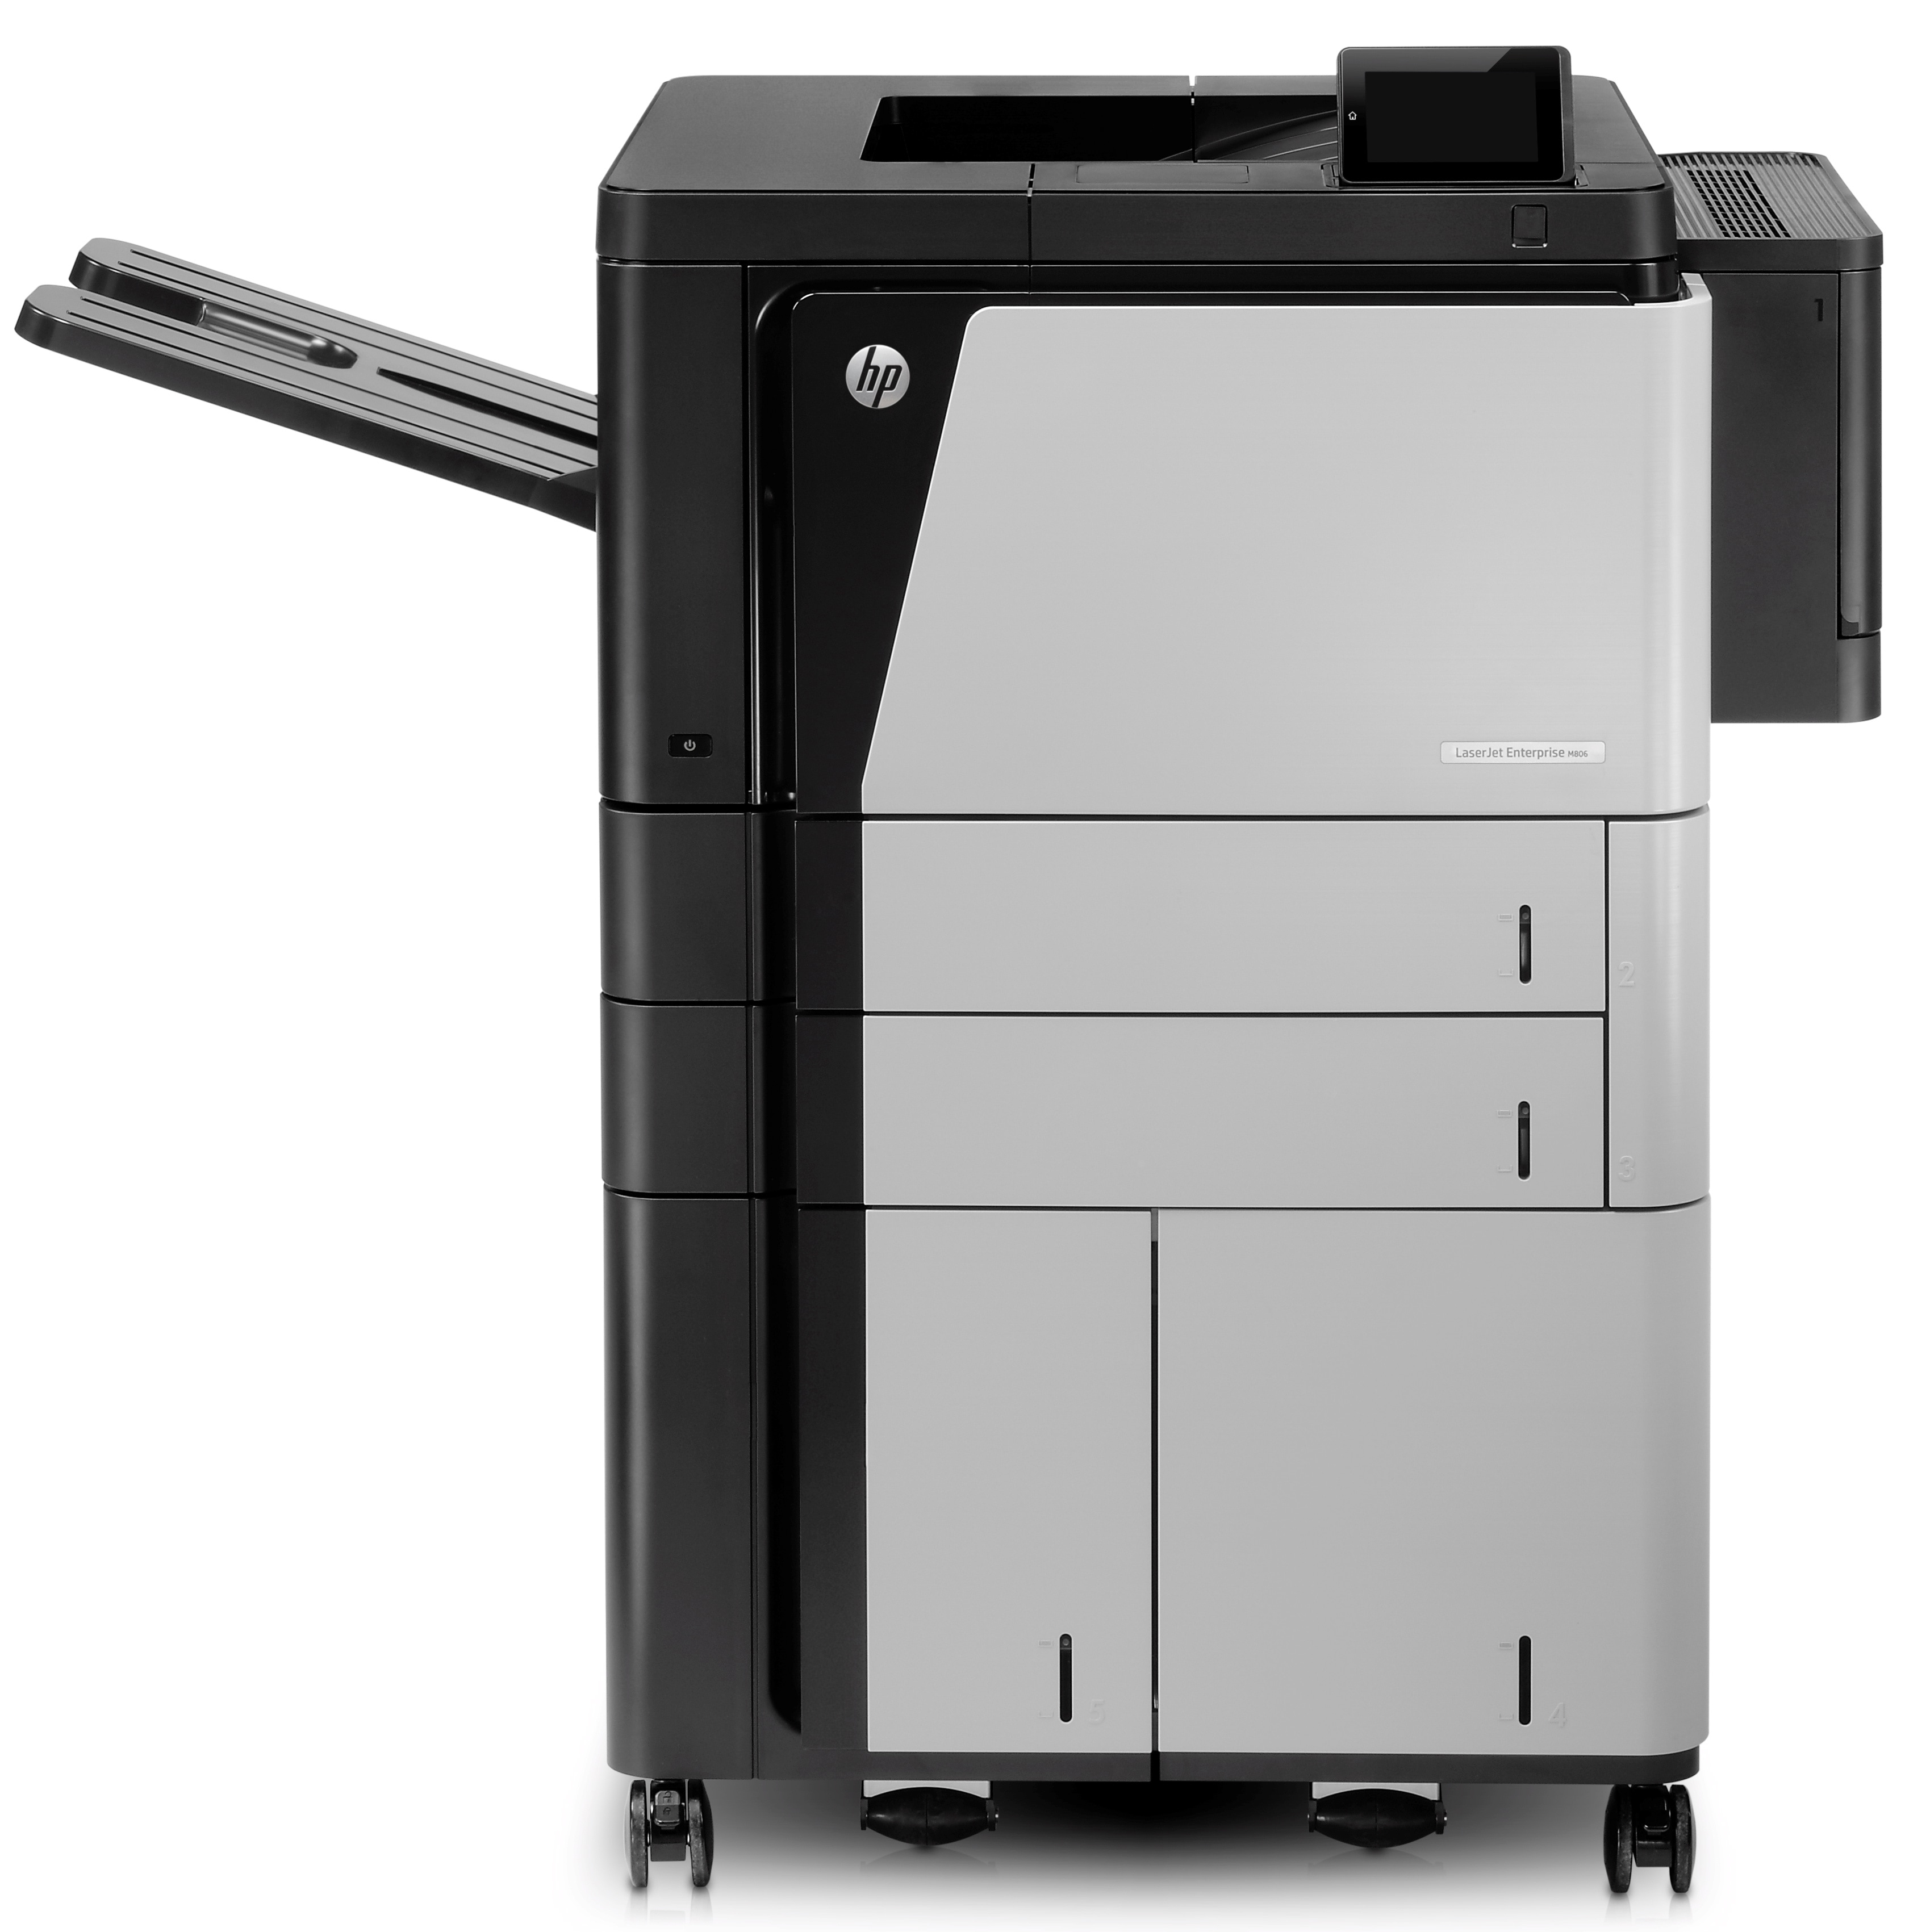 HP HP LaserJet Enterprise M806x+ printer, Black and white, Printer voor Business, Afdrukken, Printen via de USB-poort aan voorzijde; Dubbelzijdig printen